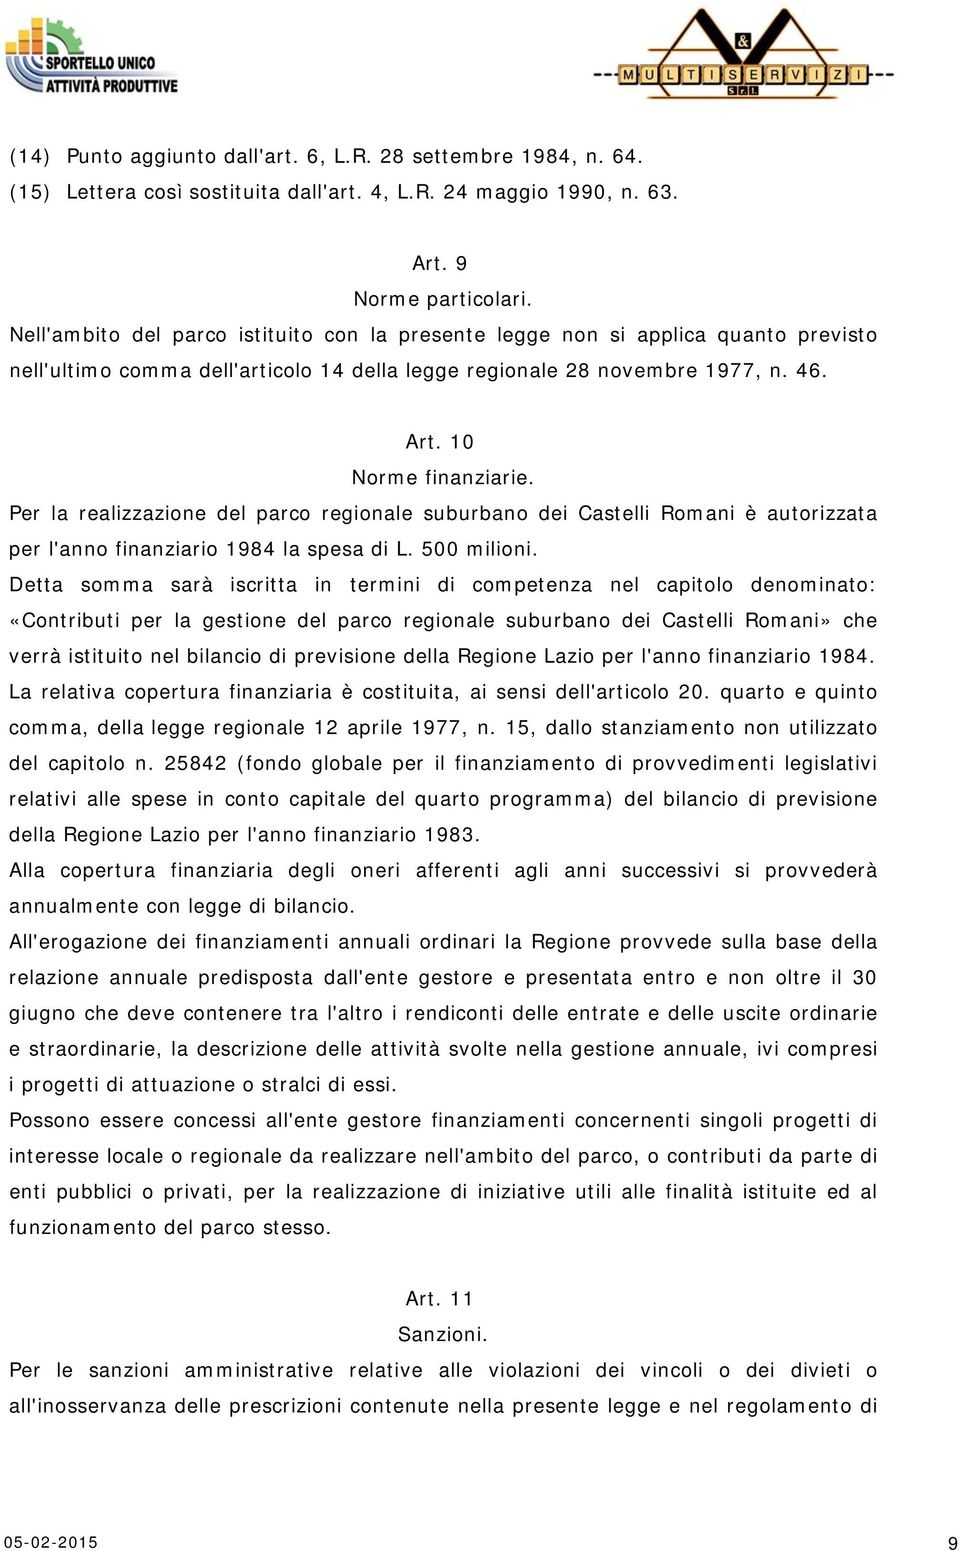 Per la realizzazione del parco regionale suburbano dei Castelli Romani è autorizzata per l'anno finanziario 1984 la spesa di L. 500 milioni.